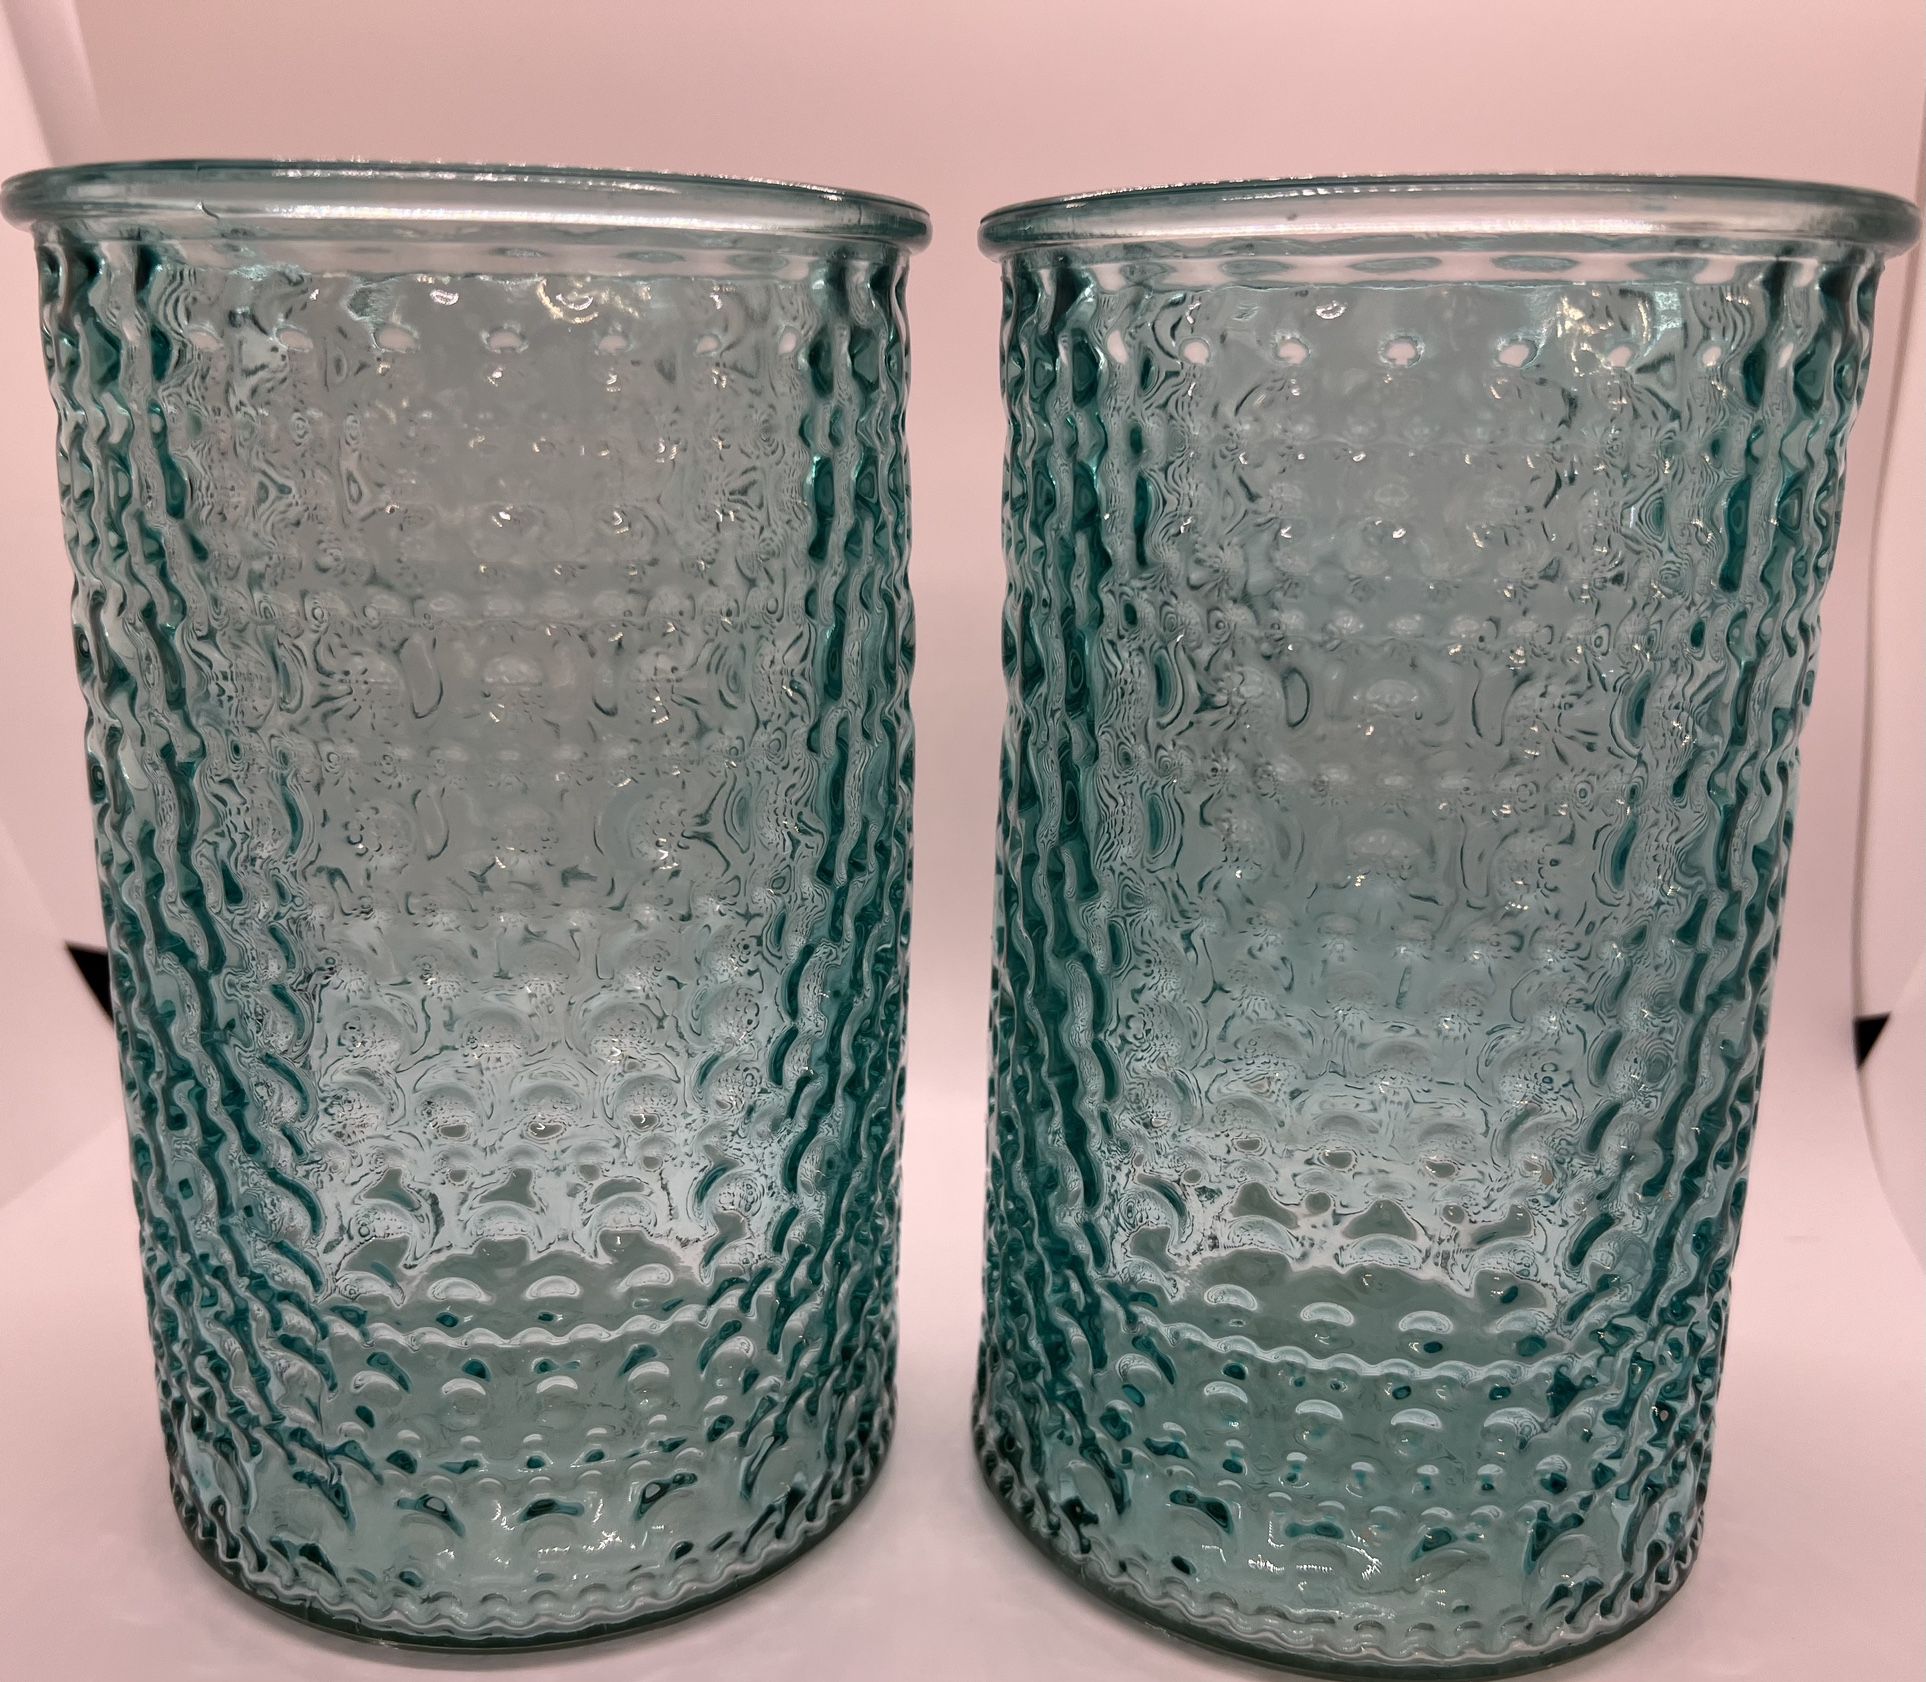 Turquoise Flower Vases